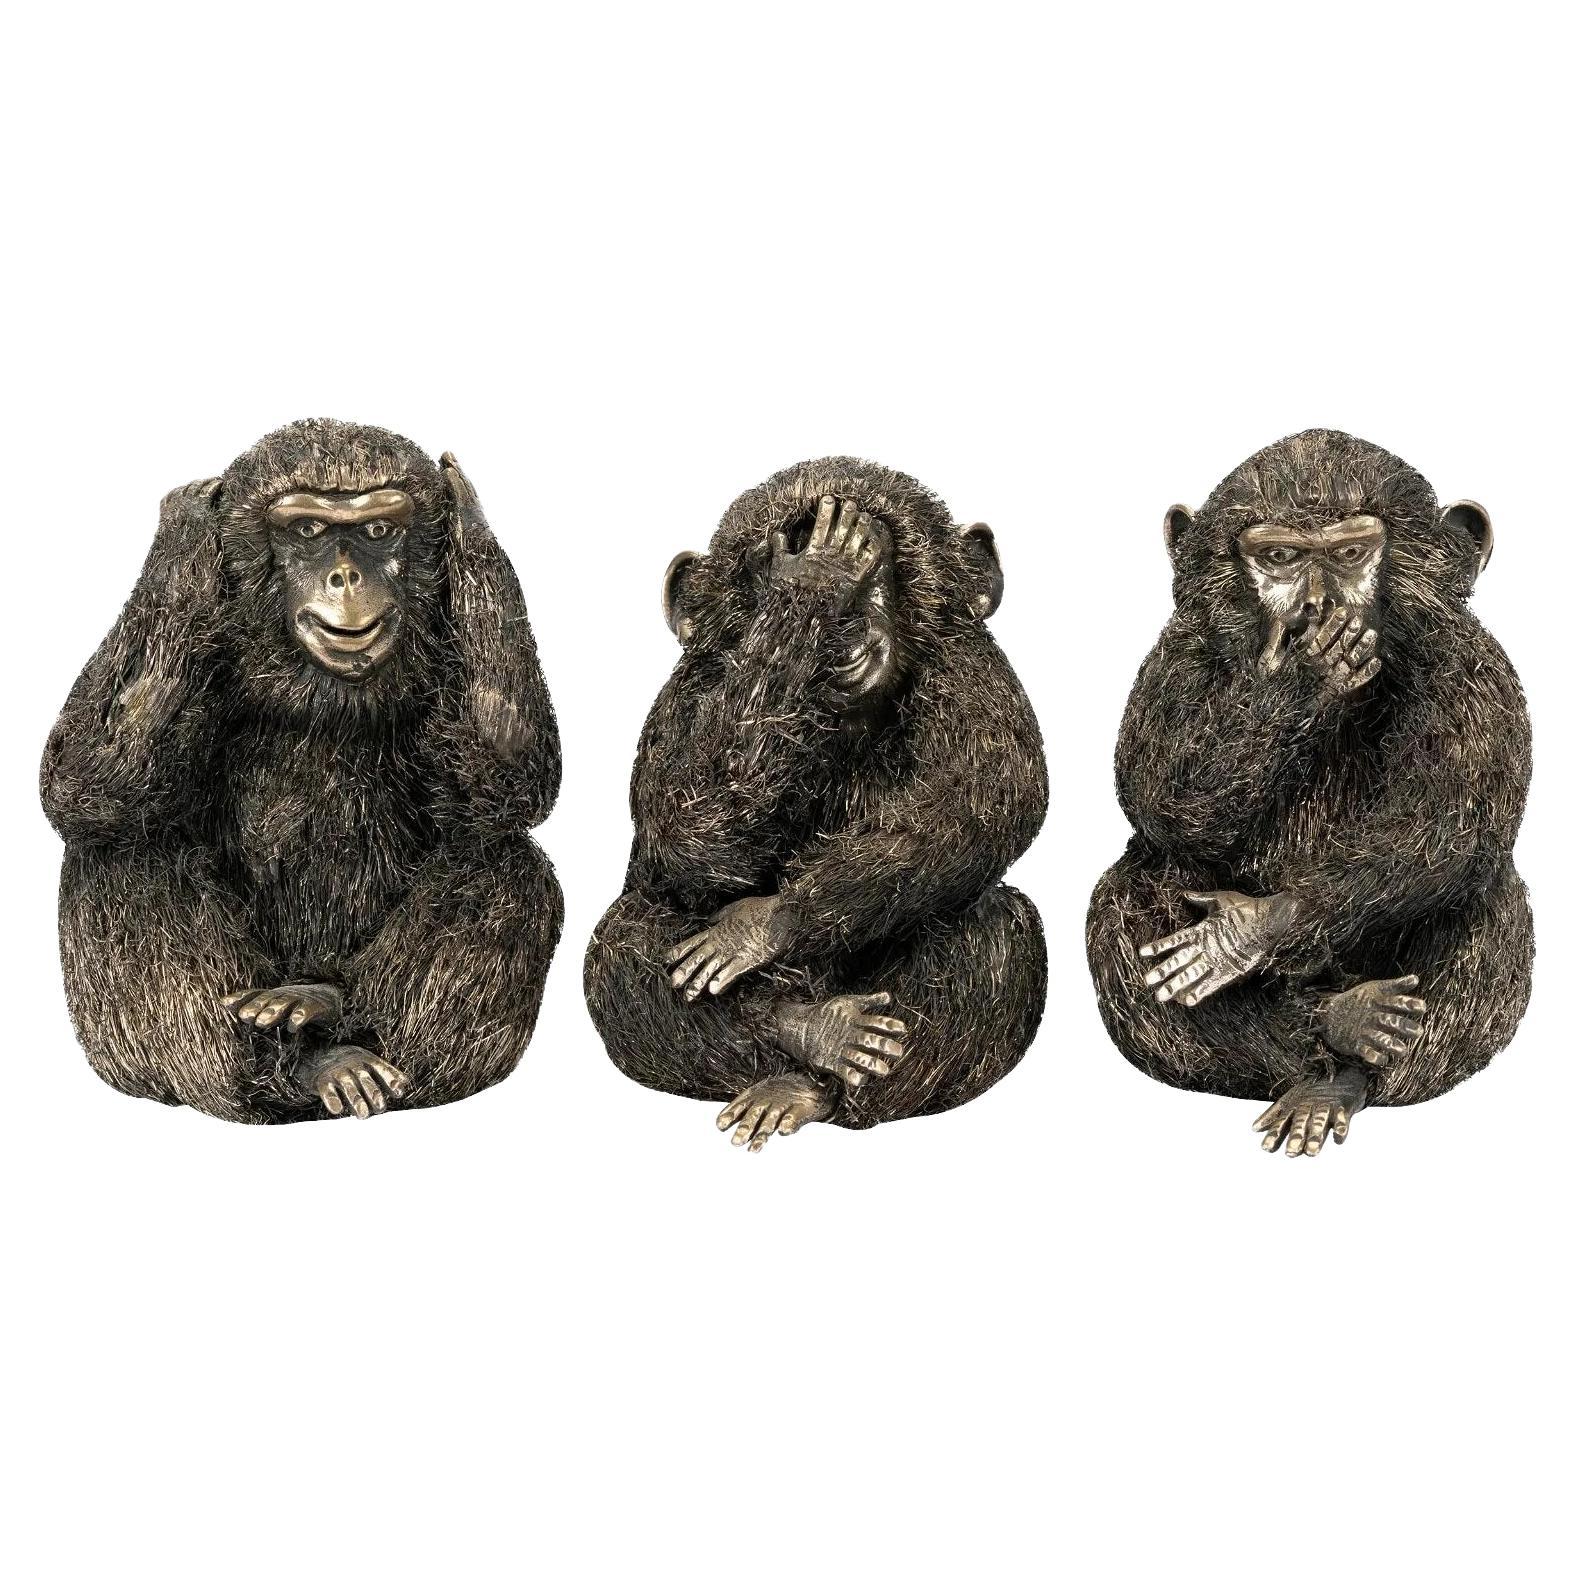 Italie Buccellati, ensemble de trois modèles en argent des singes de la sagesse